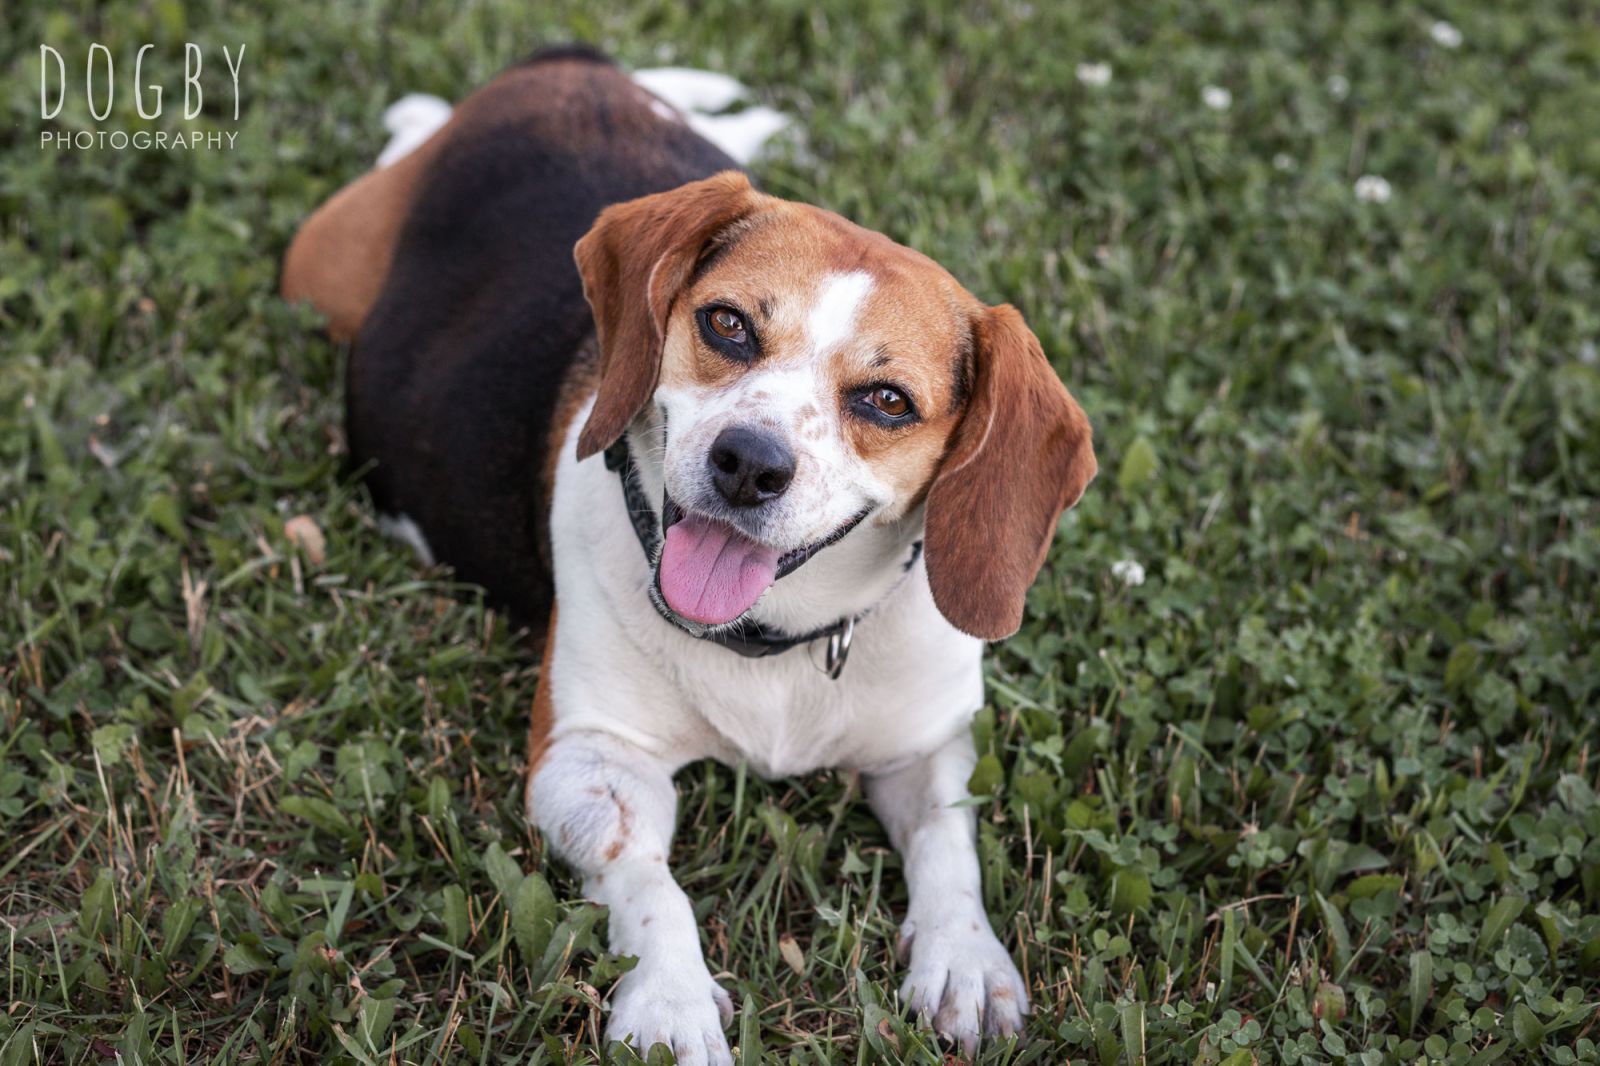 Cute beagle dog looking up at camera